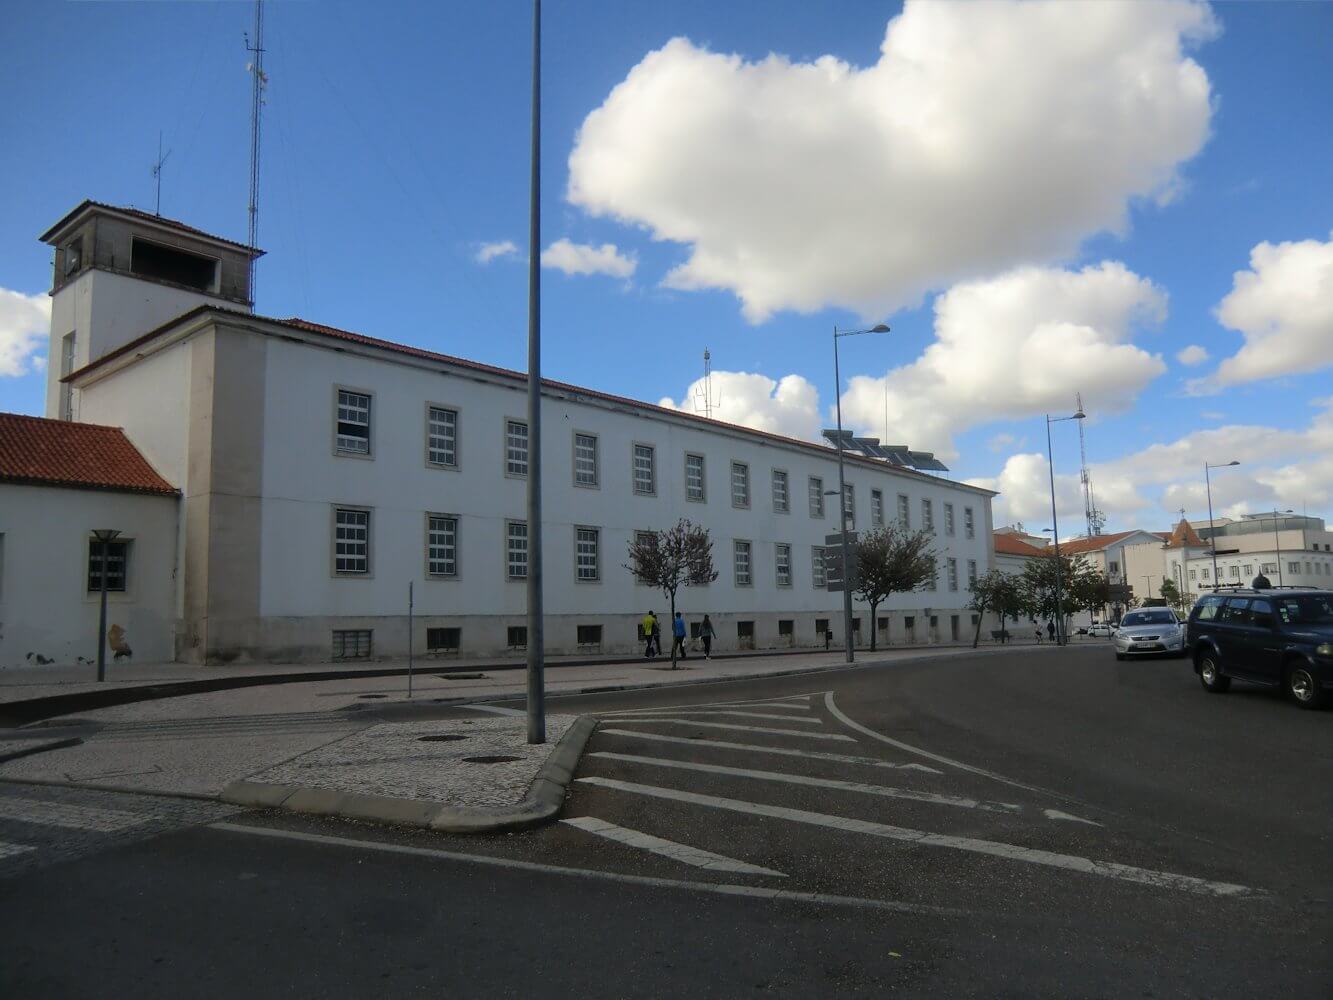 ehemaliges Dominikanerkloster in Santarém, heute Polizeiquartier